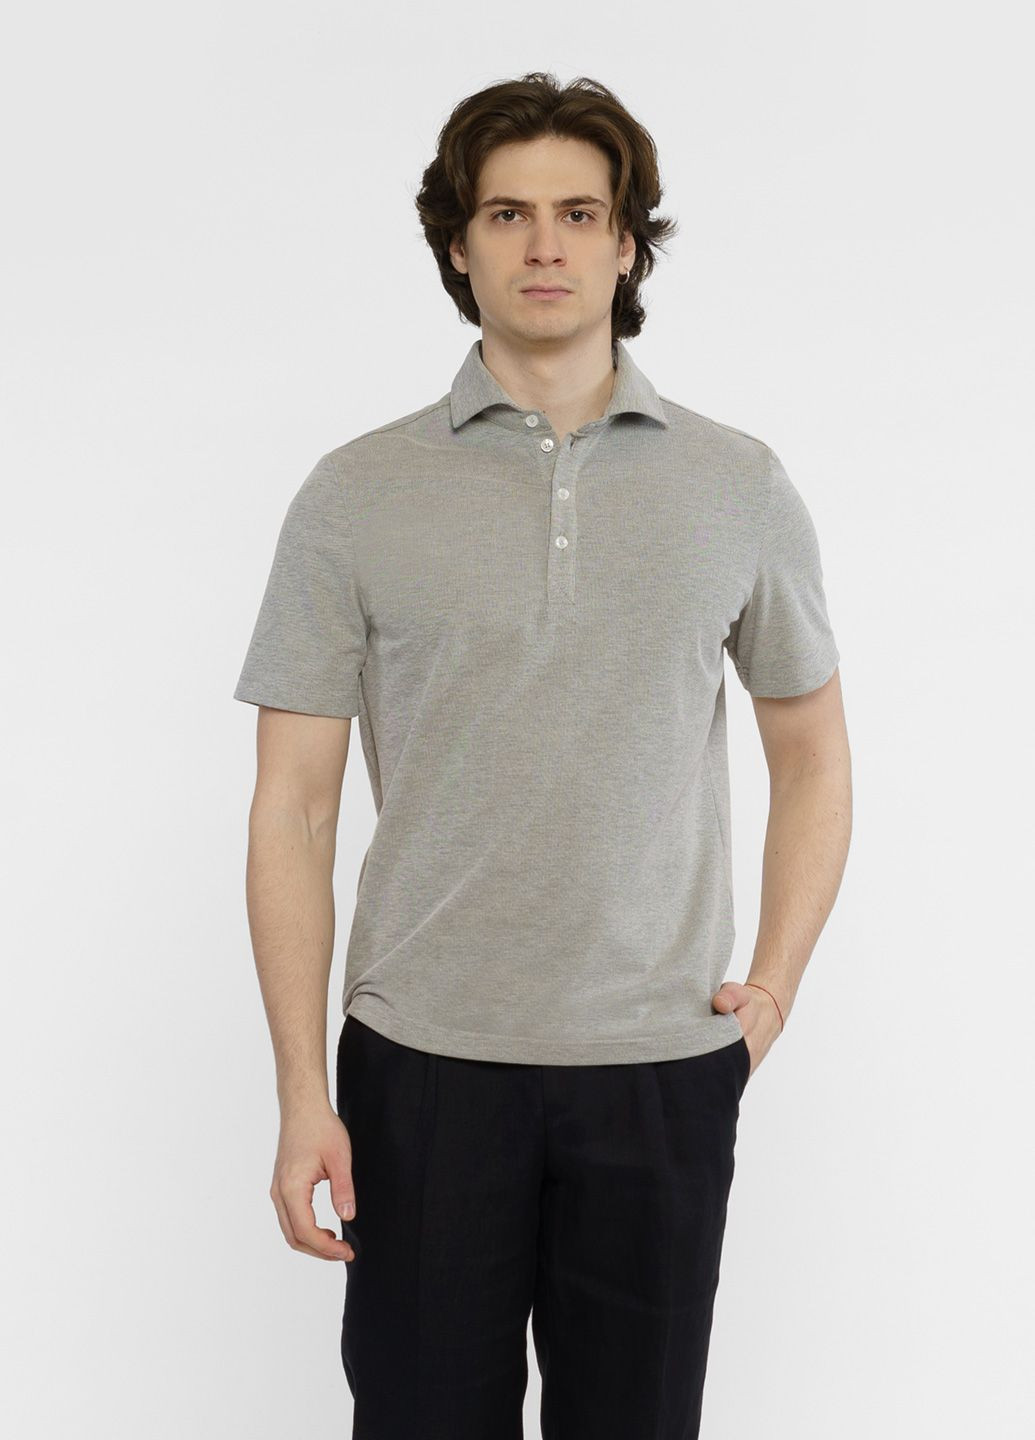 Серая футболка-поло мужское серое для мужчин Arber однотонная